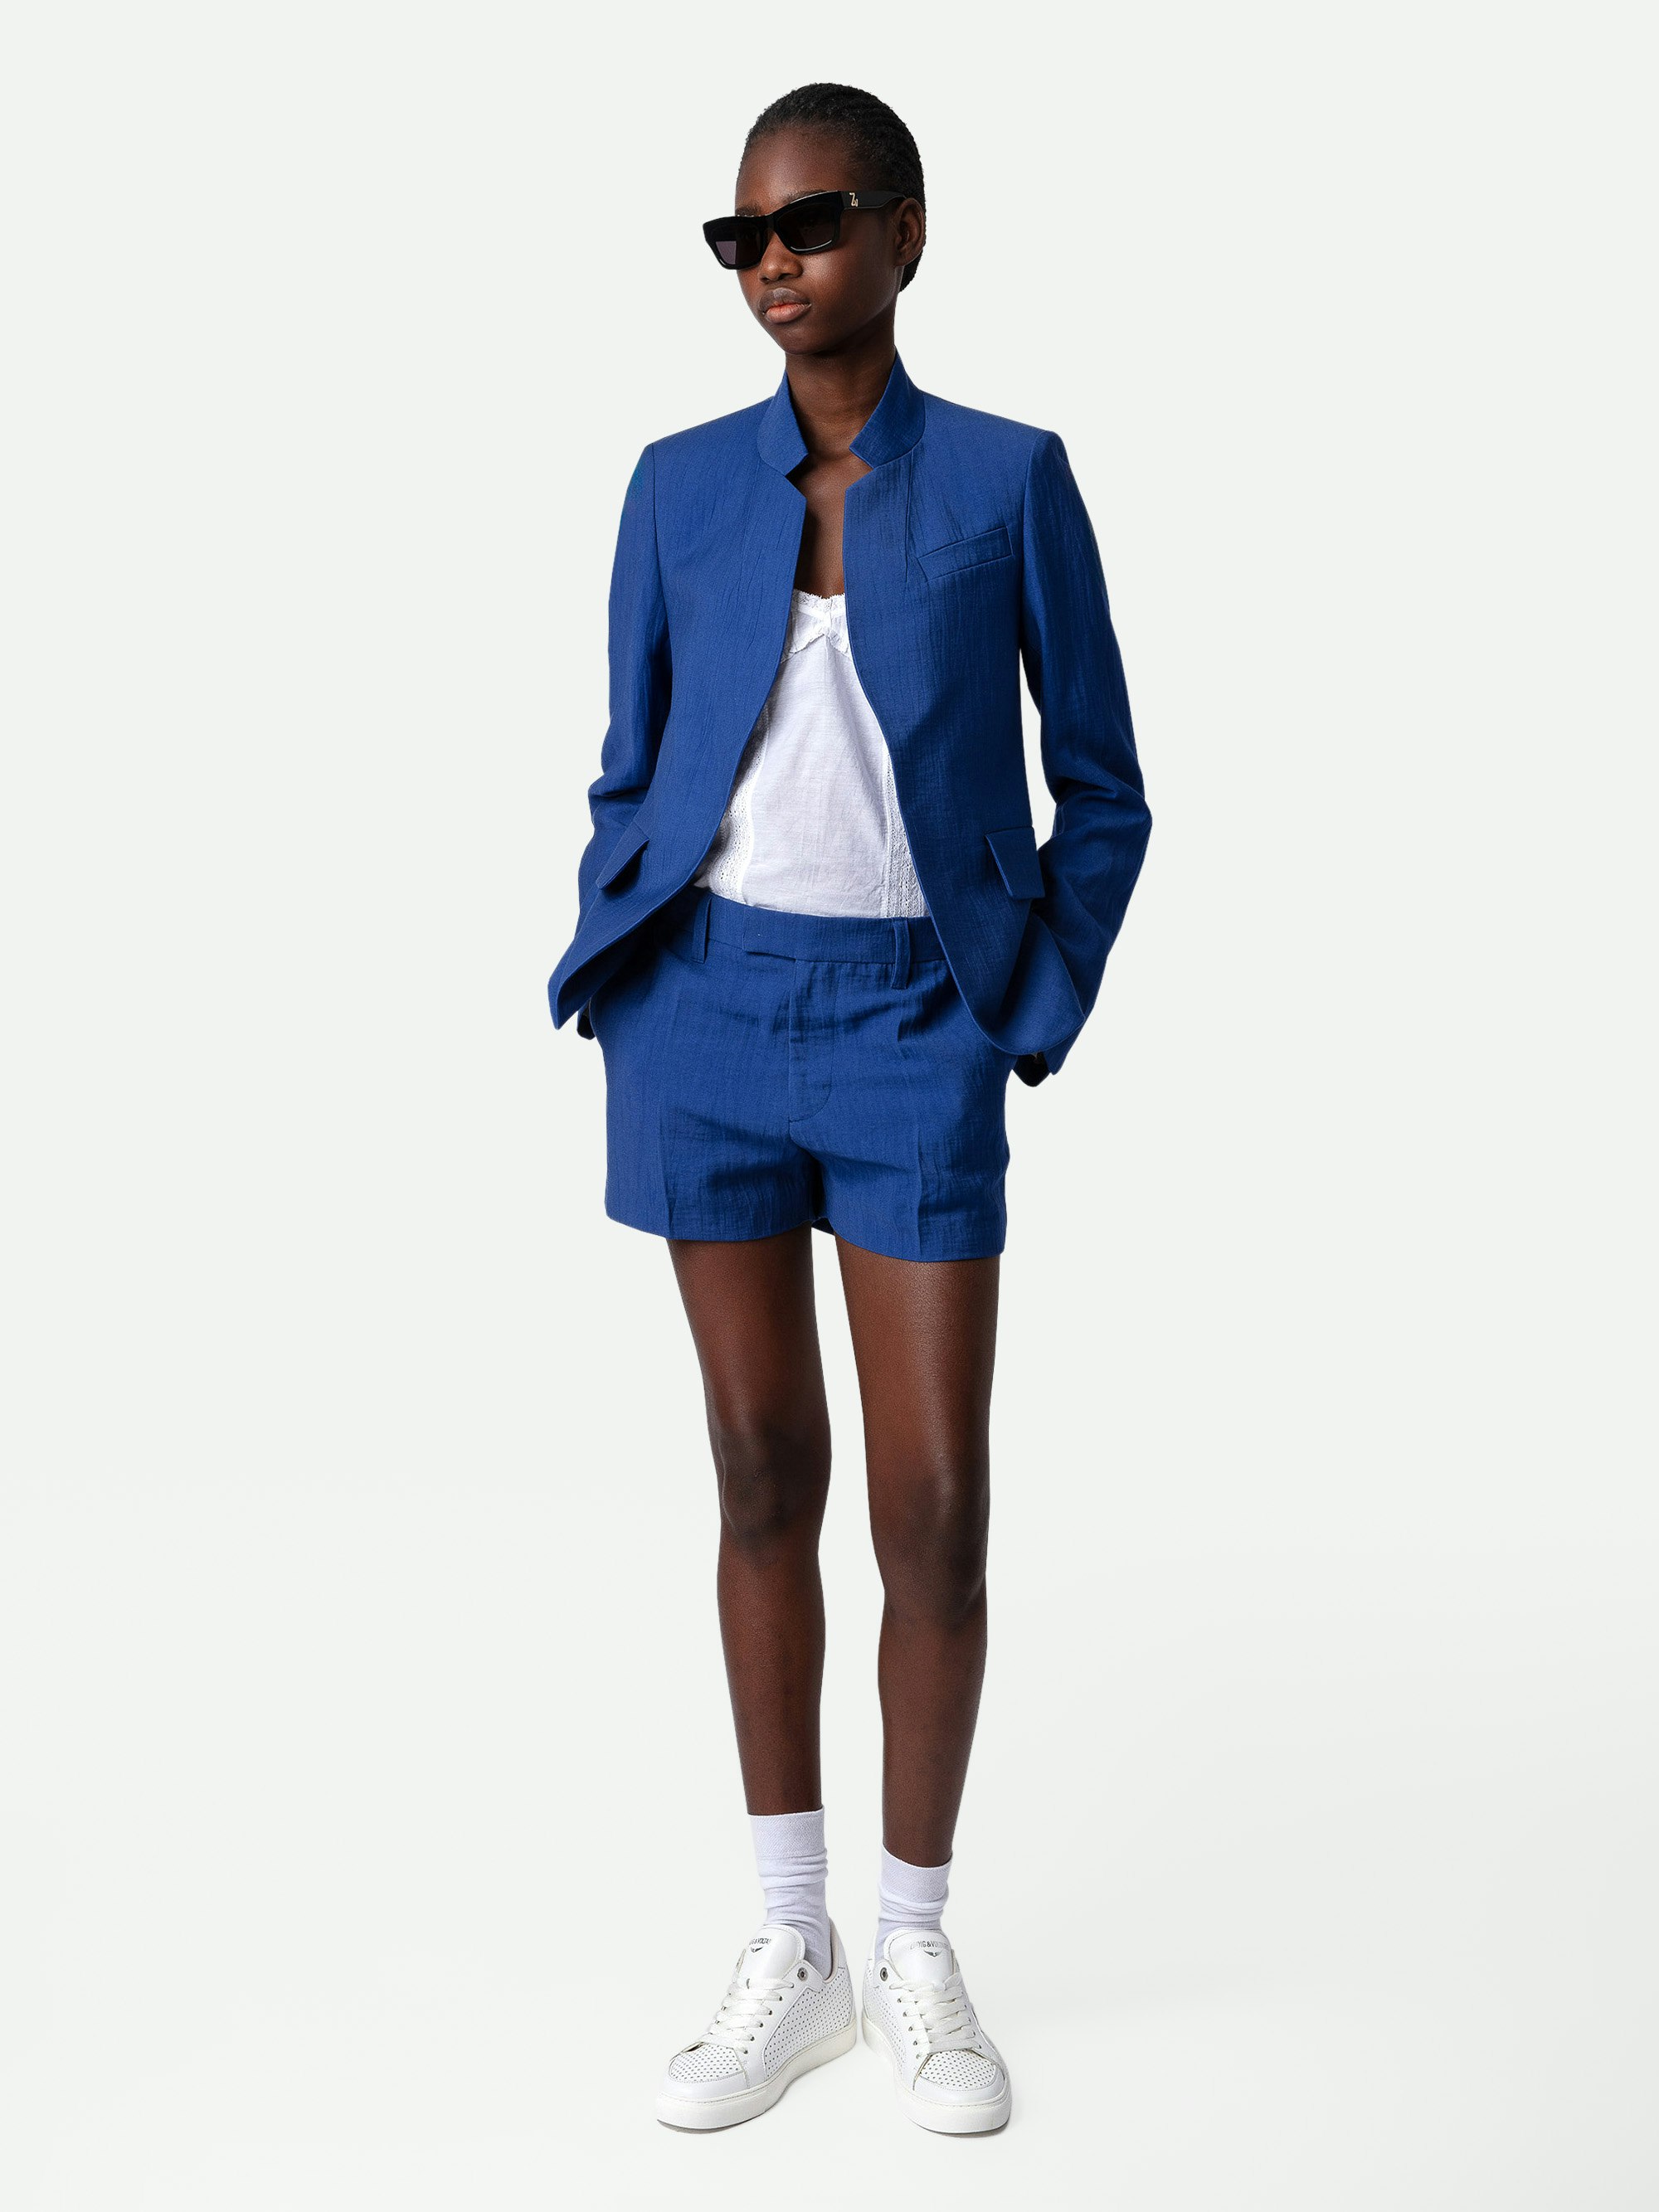 Pantalón Corto de Lino Please - Pantalón de traje corto de lino en color azul con bolsillos.